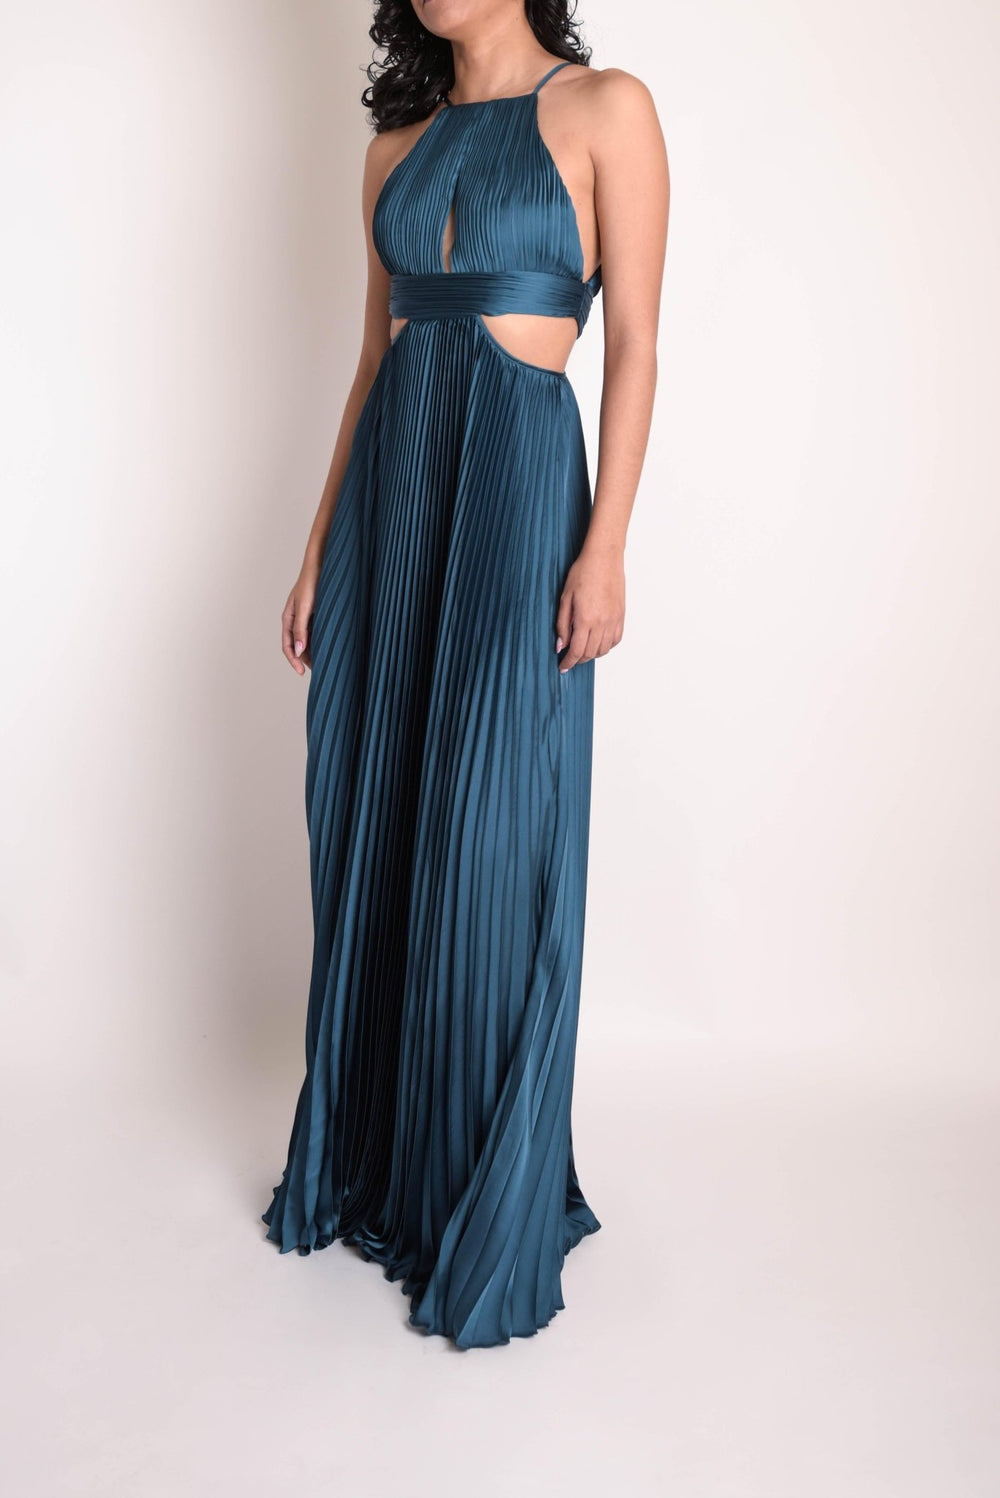 Milla - azul - Lend the Trend renta de vestidos mexico